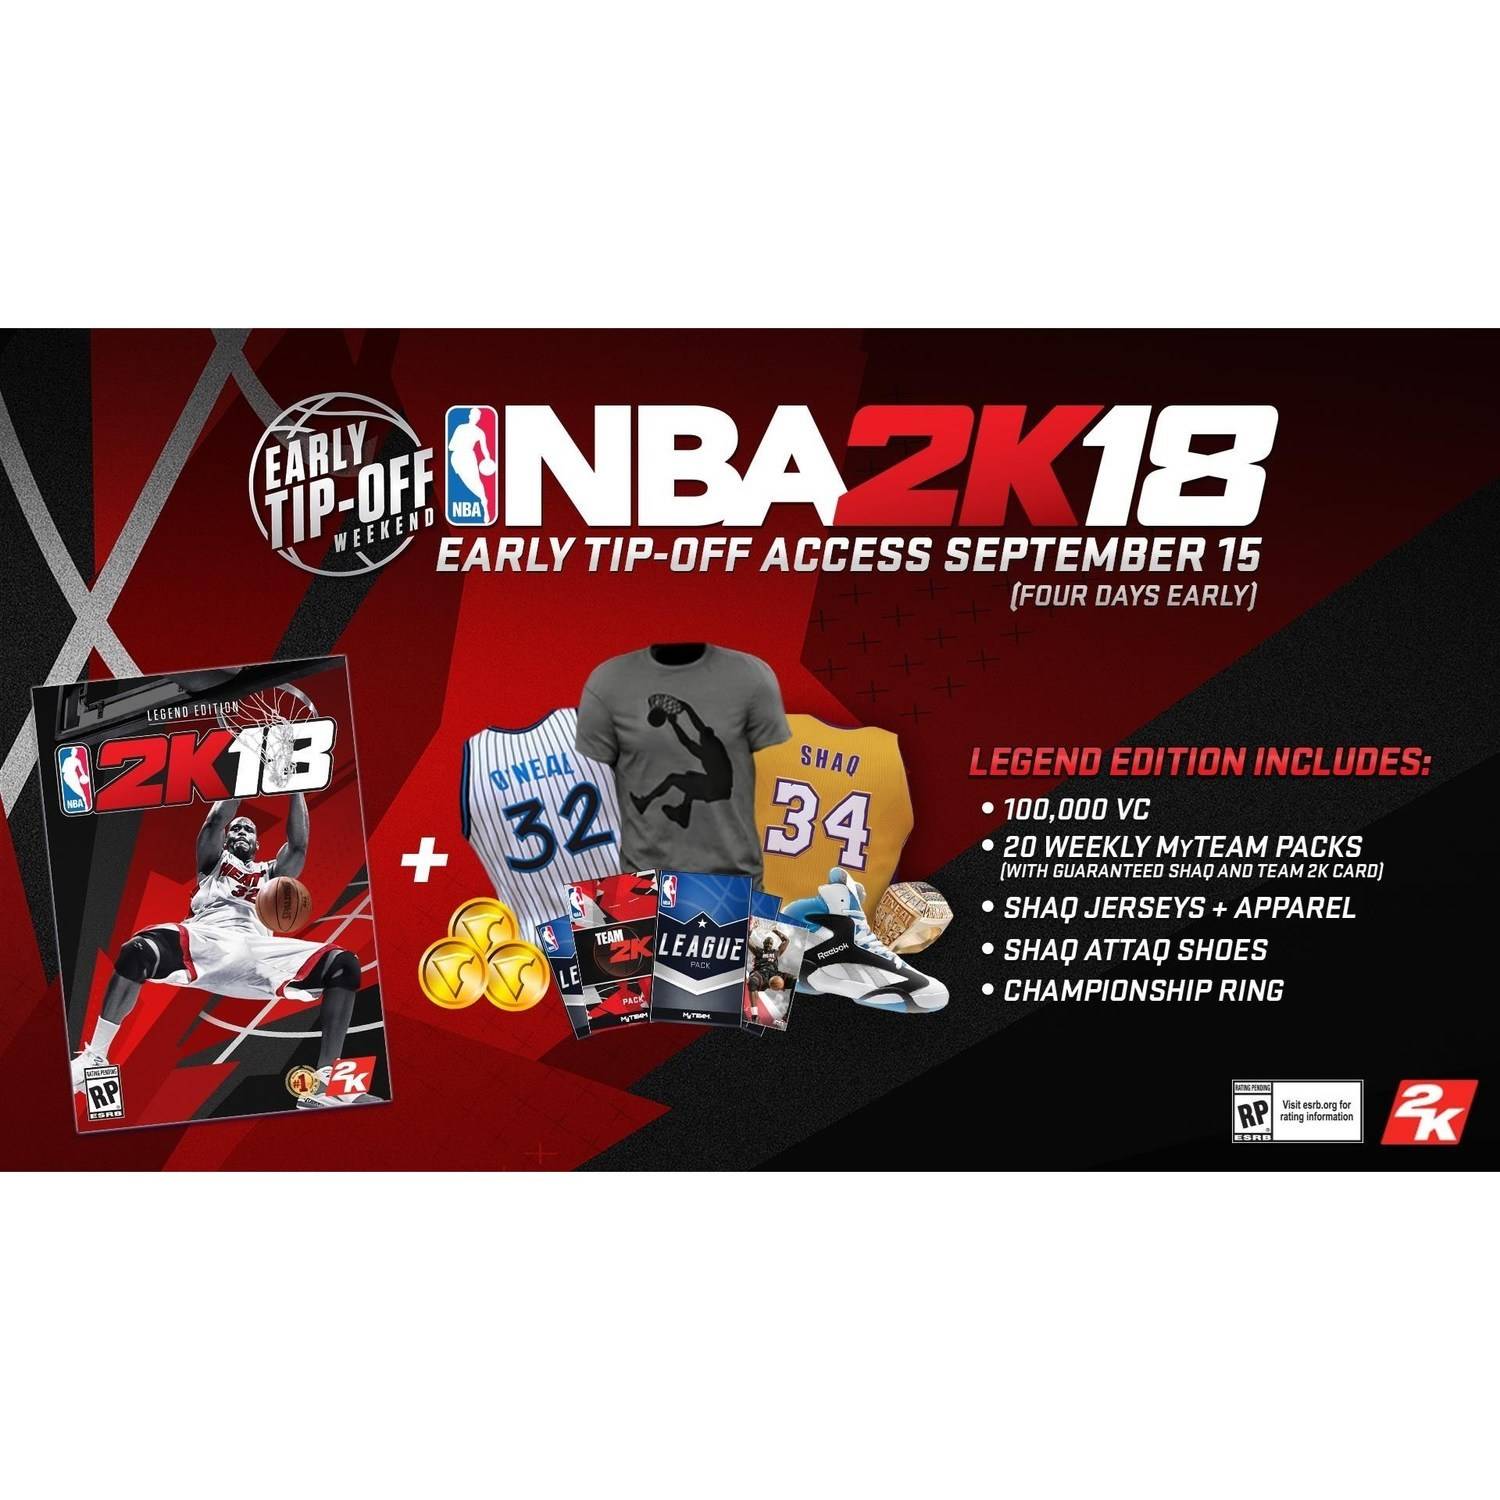 NBA 2K18 Legend Edition, 2K, PlayStation 4, 710425479120 - image 2 of 6